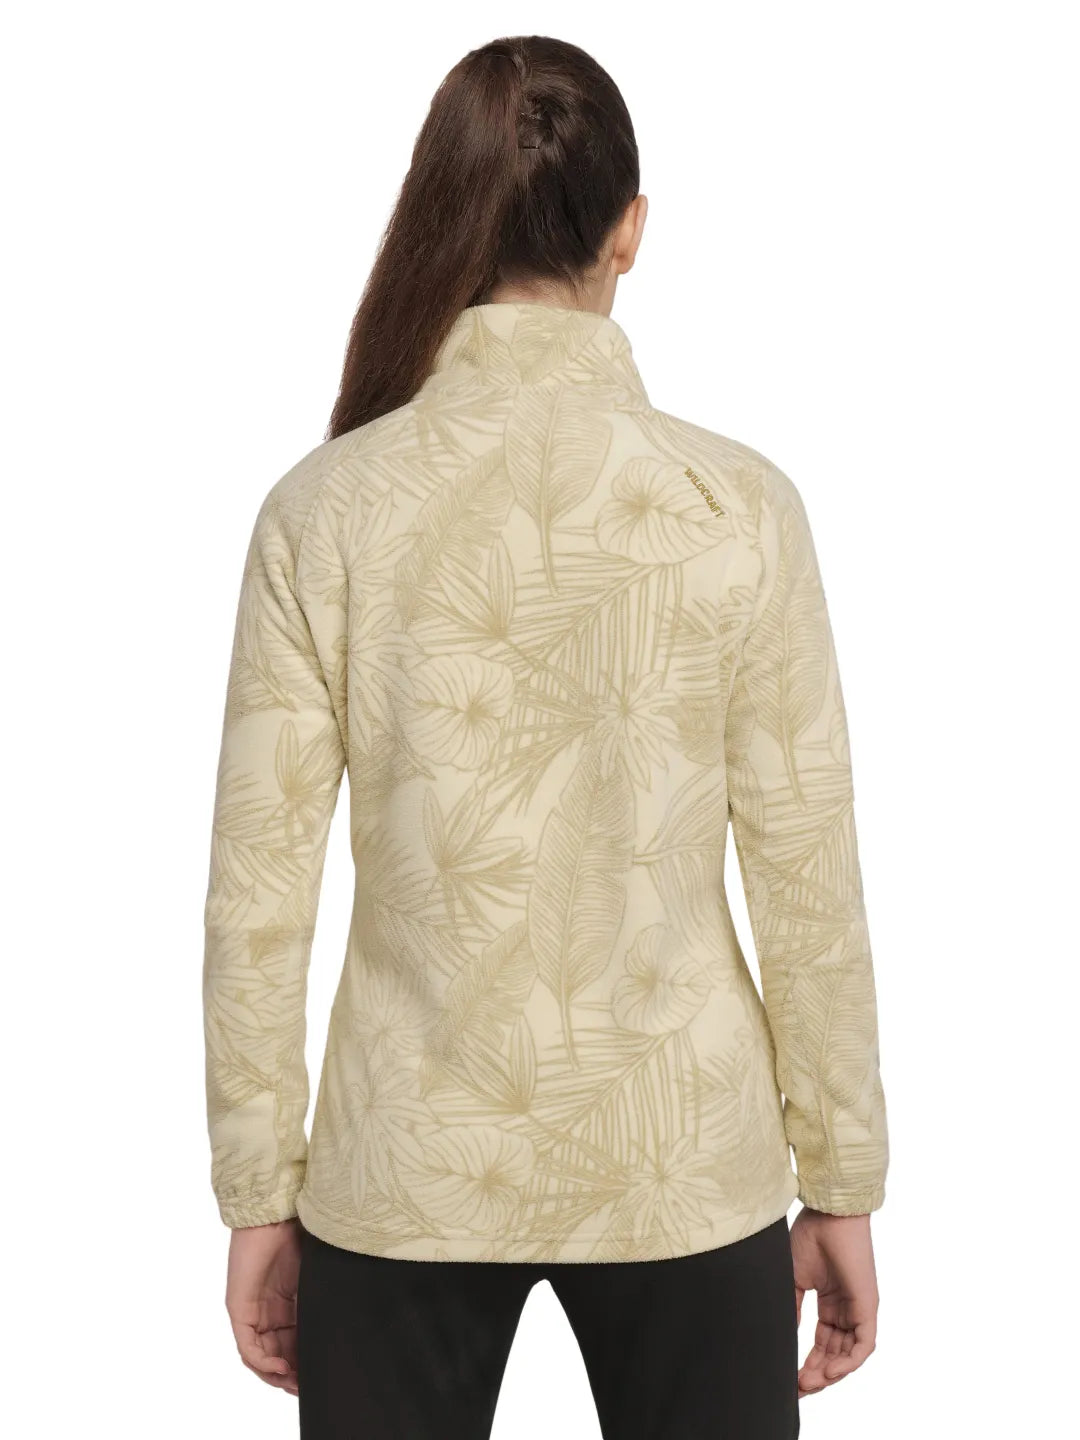 Women Printed Half Zip Fleece Jacket